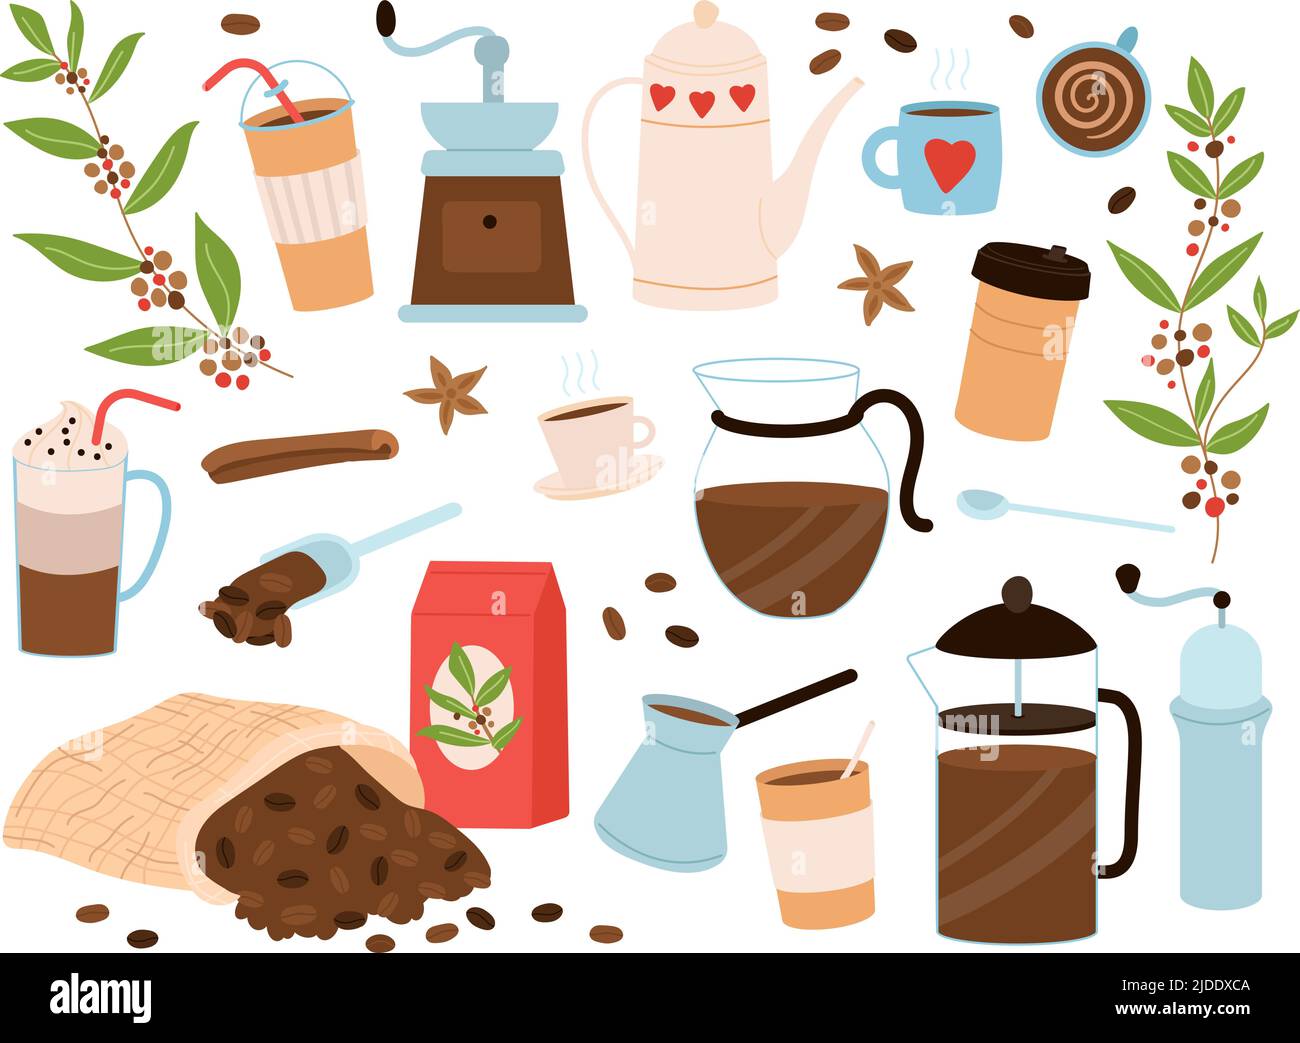 Elementi di caffè carini. Adesivi per espresso e cappuccino. La mattina bevande calde, tazze e macchina per il caffè. Fagioli neri in sacchetto, caffè arte panetteria oggetti decenti Illustrazione Vettoriale